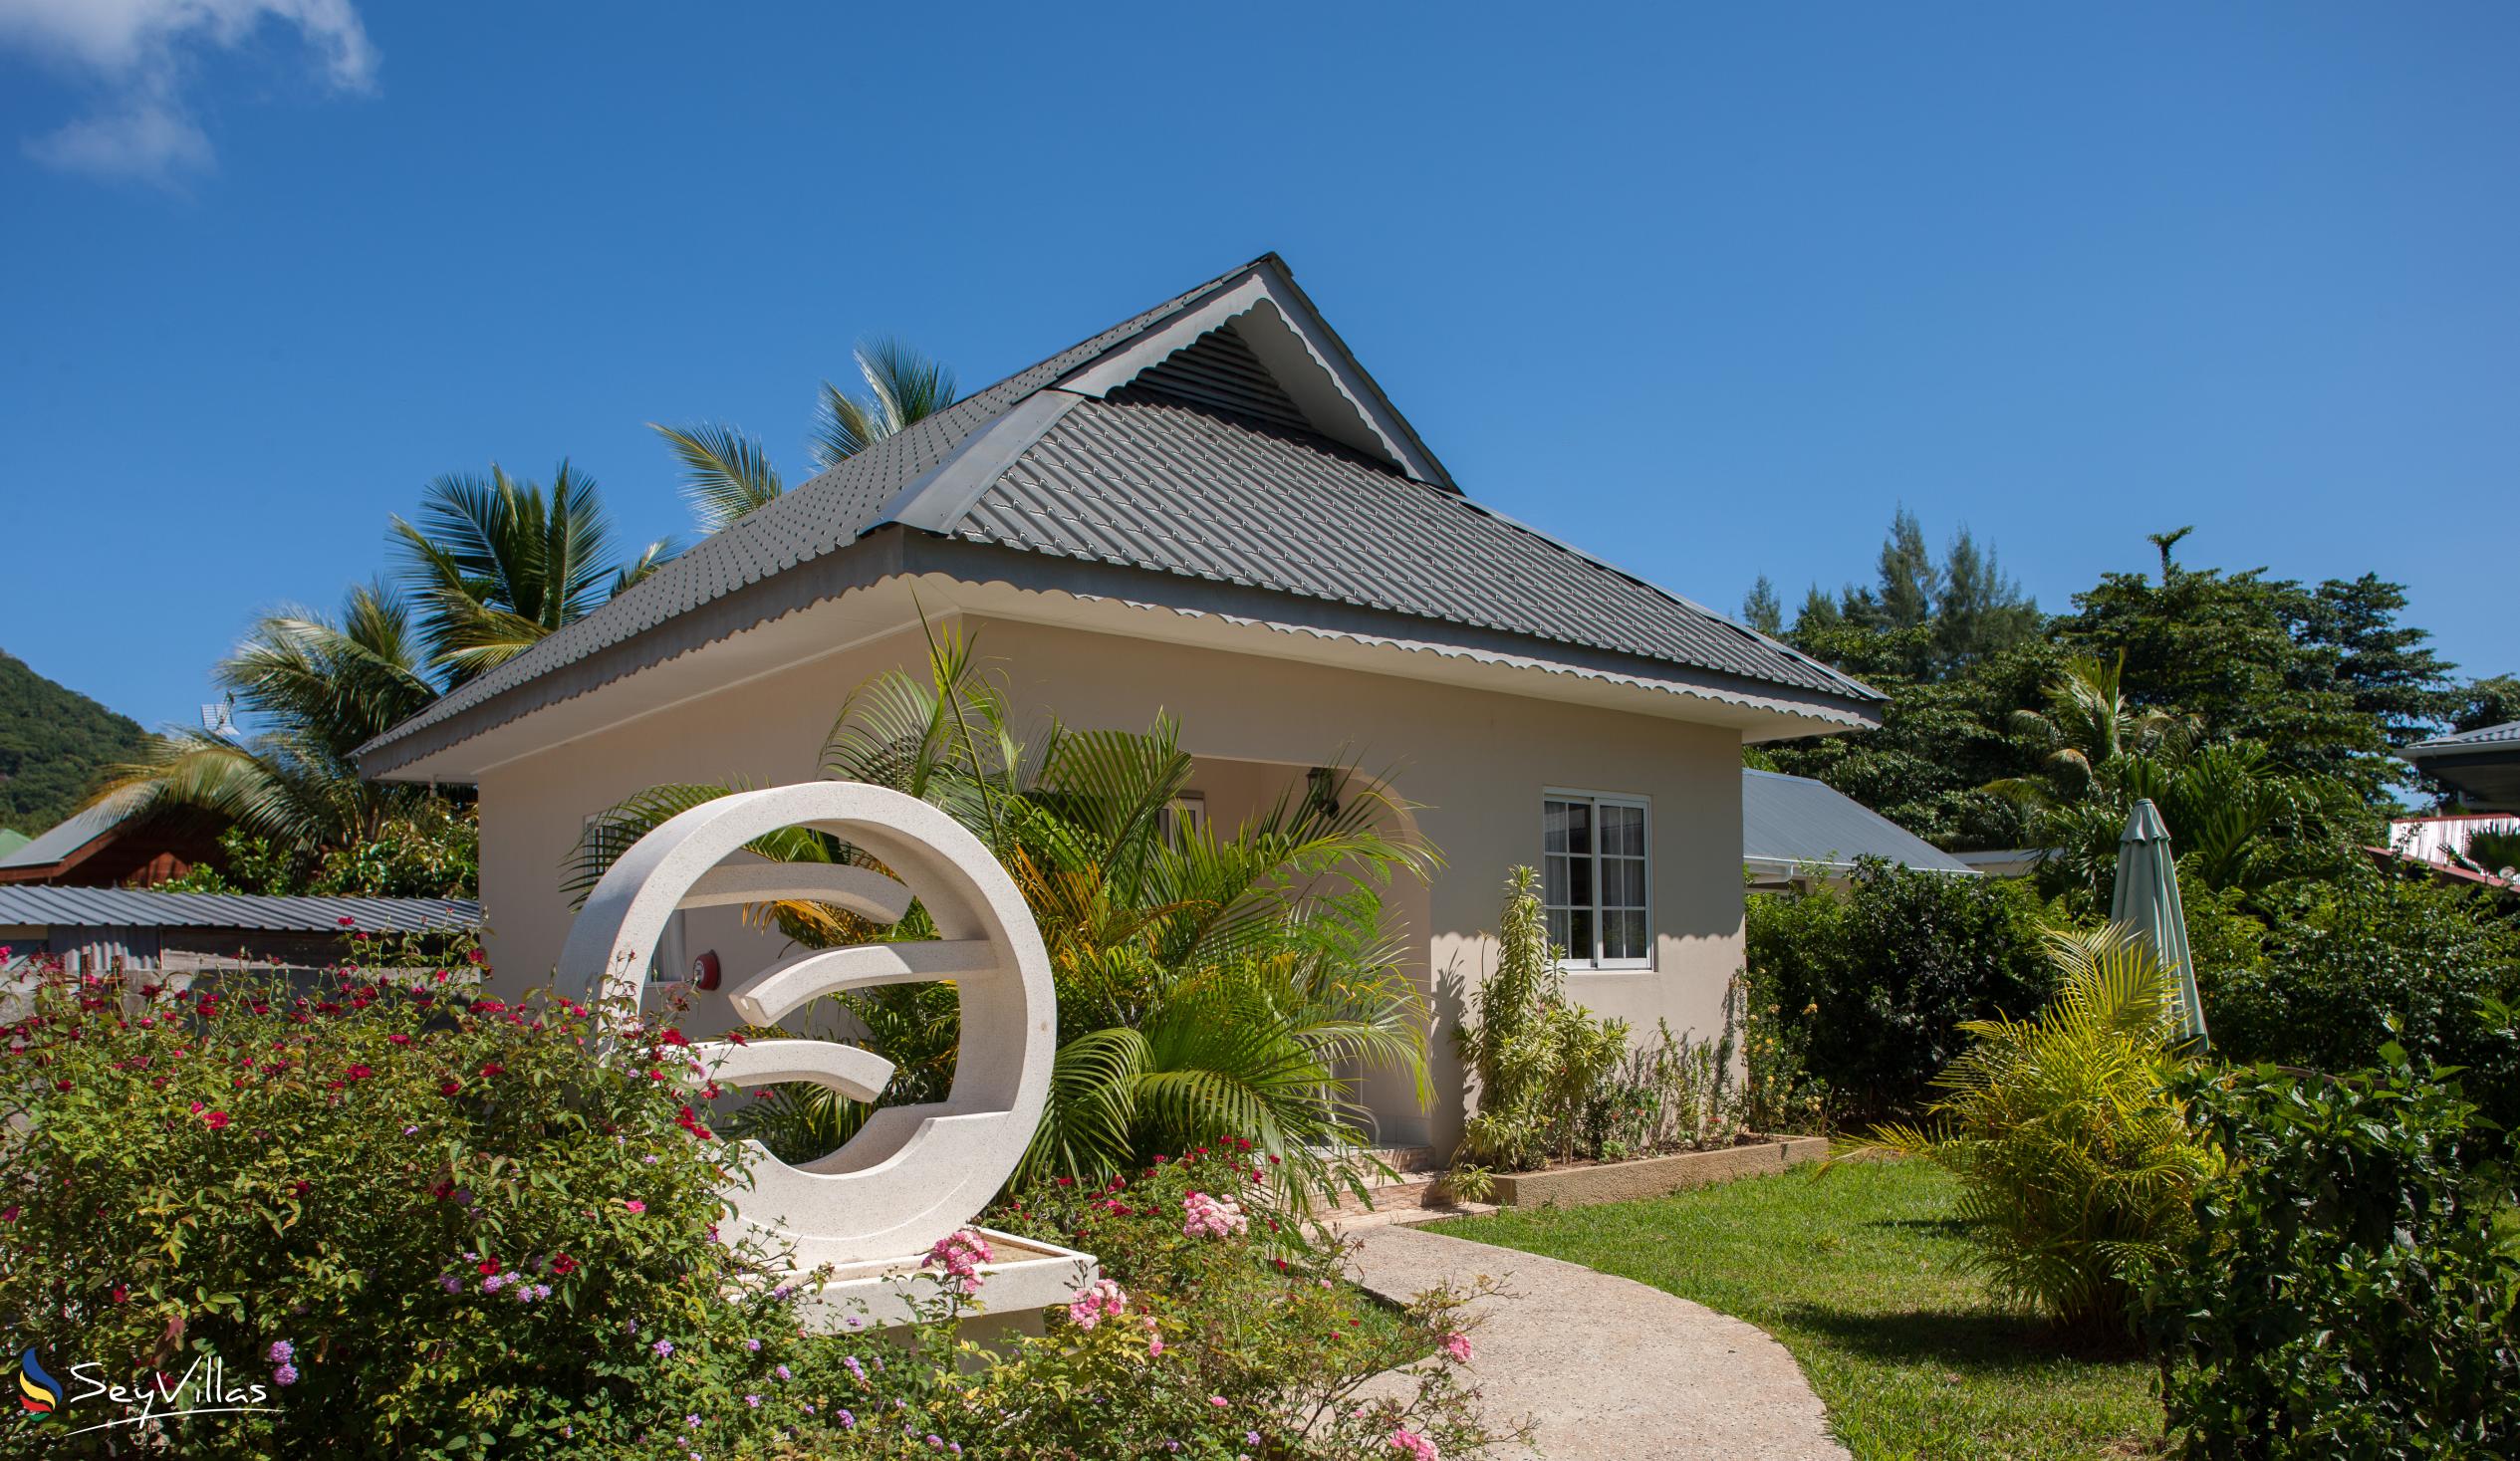 Photo 6: Villa Source D'Argent - Outdoor area - La Digue (Seychelles)